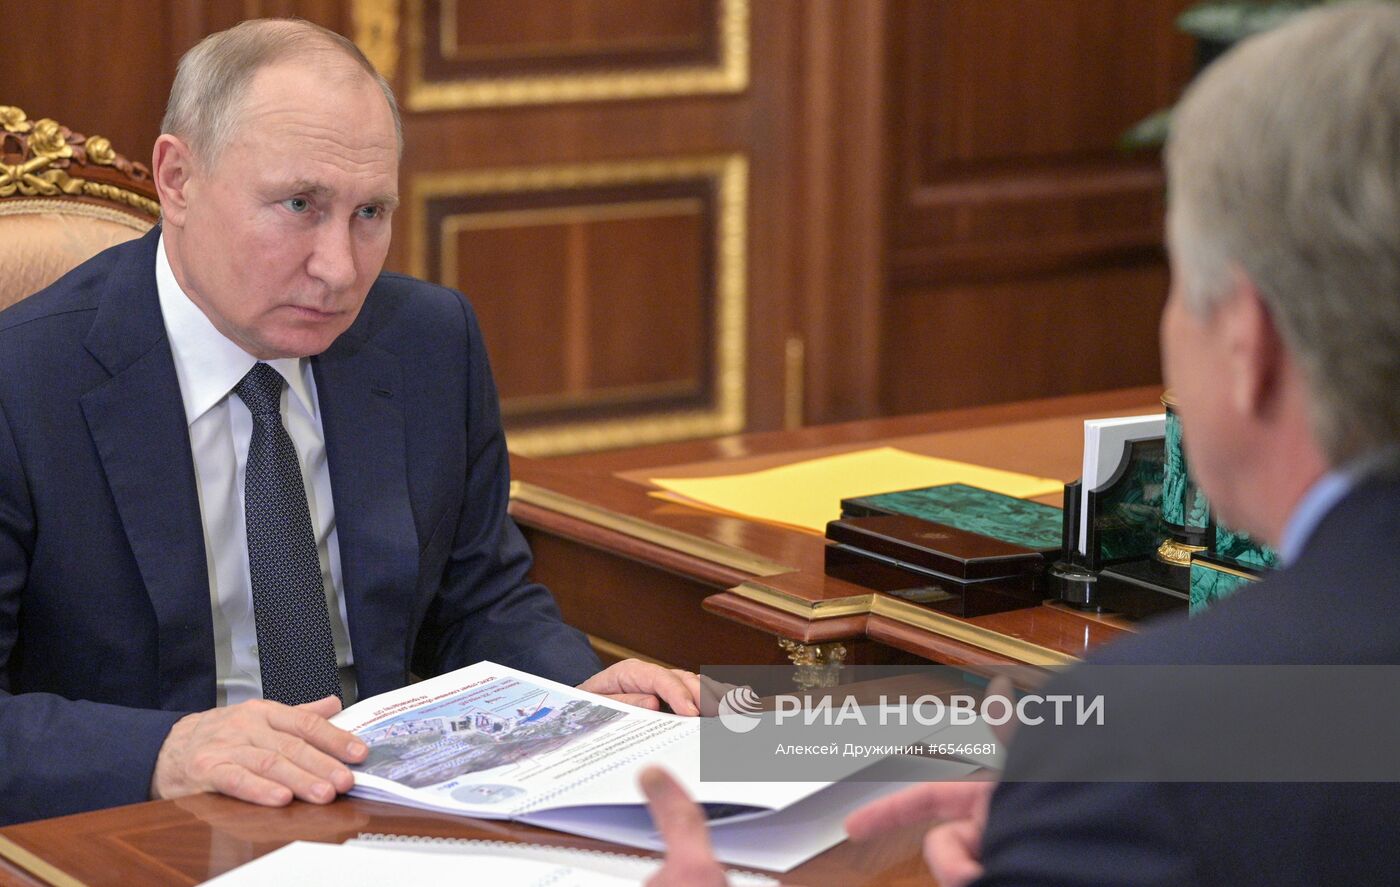 Президент РФ В. Путин встретился с главой ПАО "Новатэк" Л. Михельсоном